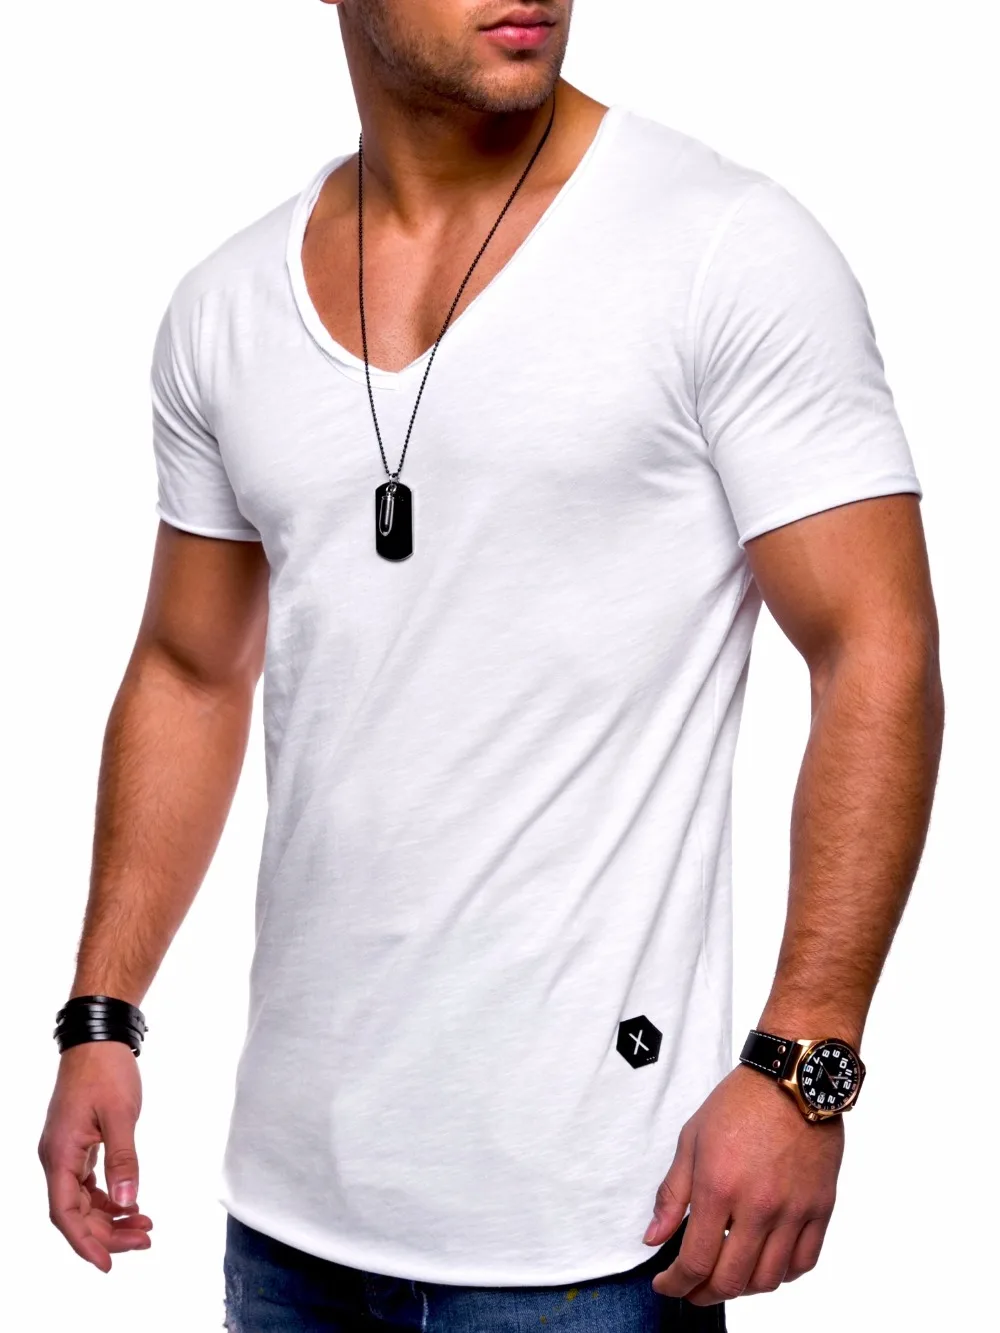 Мужские топы, футболки, поступление, глубокий v-образный вырез, короткий рукав, Мужская футболка, облегающая футболка, Мужская облегающая Повседневная летняя футболка, camisetas, Размер 3XL